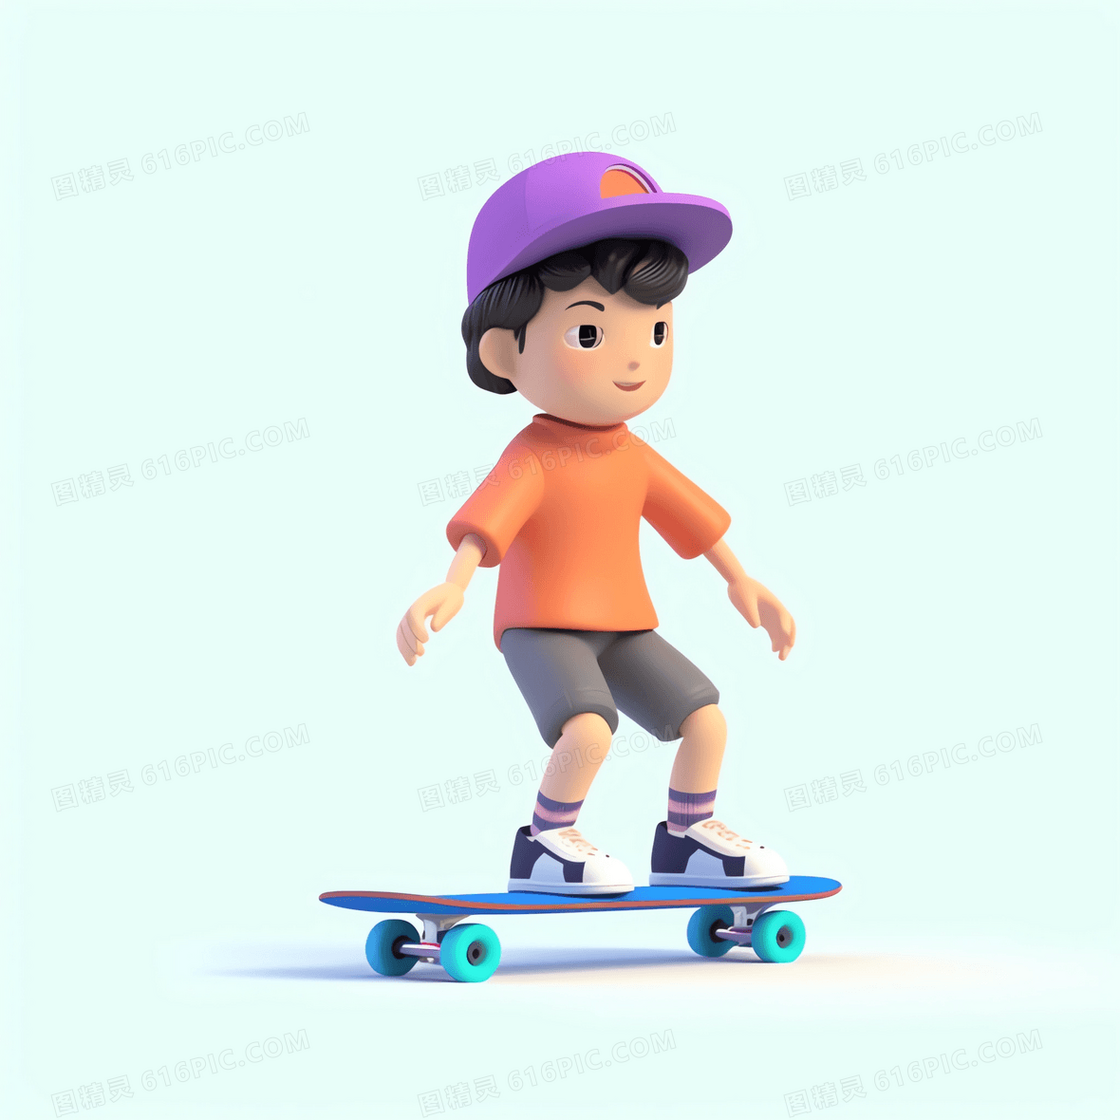 在滑板上做惯性滑行的可爱男孩3D模型